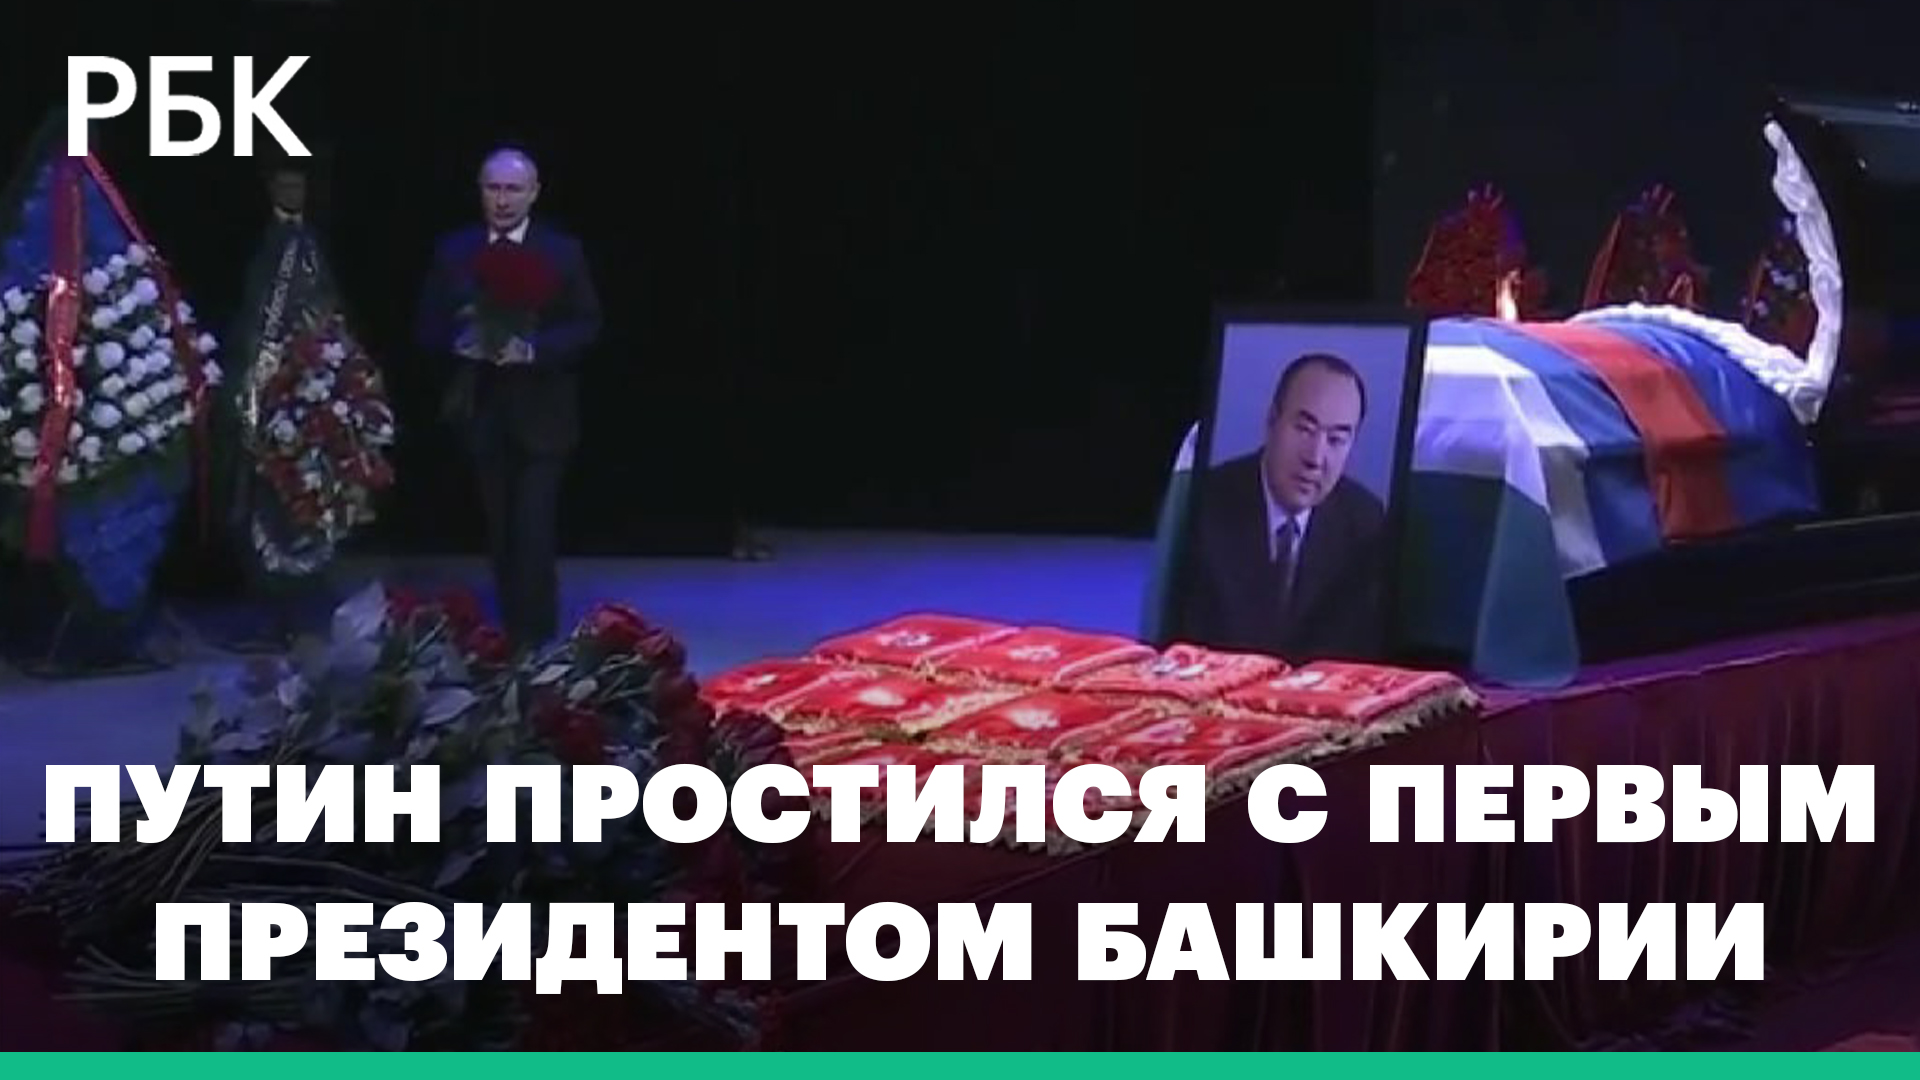 Путин простился с первым президентом Башкирии Рахимовым. Видео